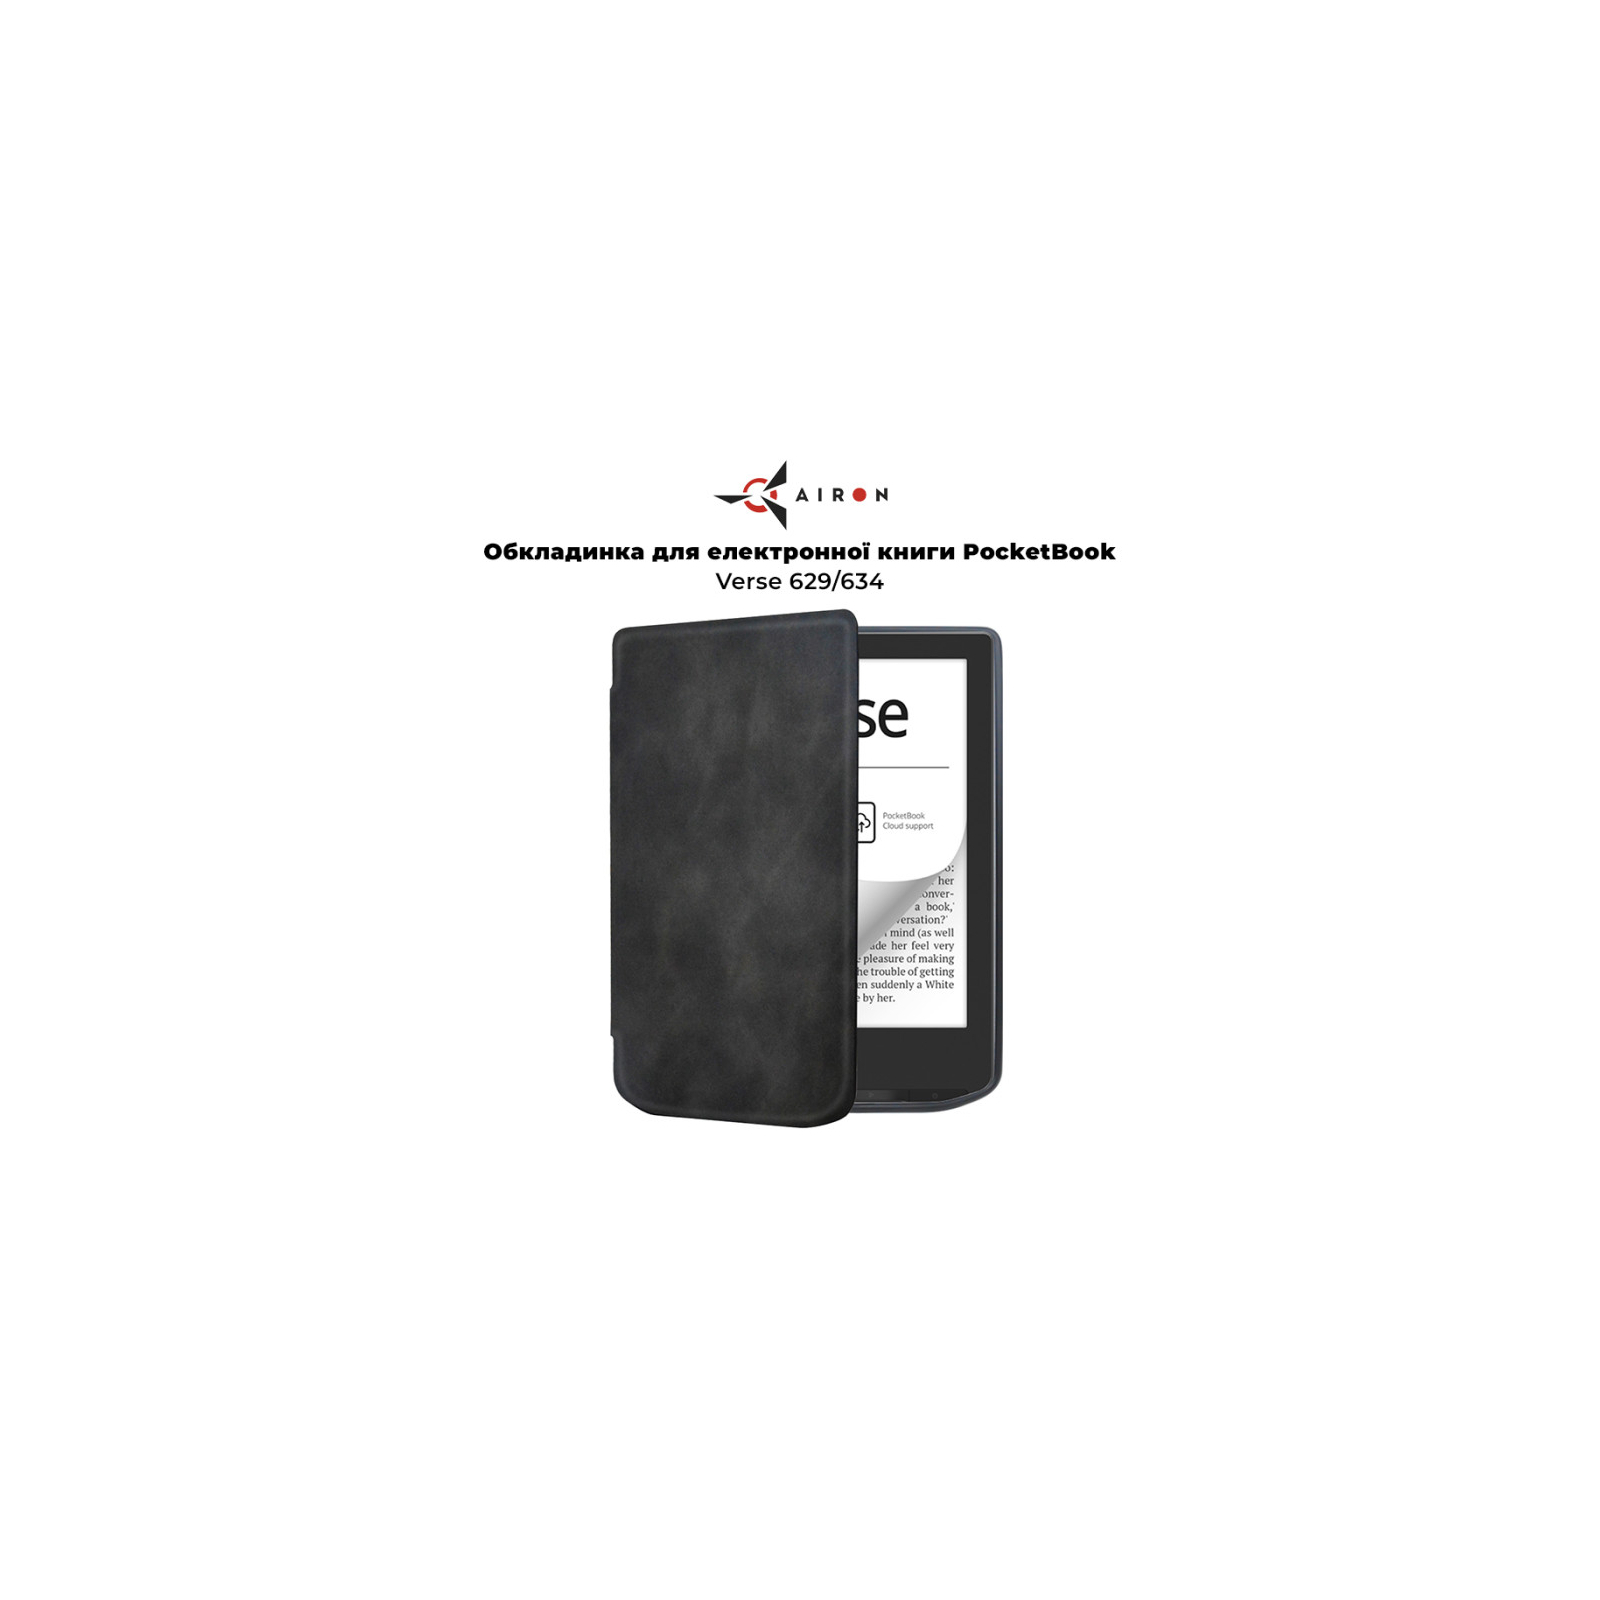 Чехол для электронной книги AirOn Premium PocketBook Verse 629/634 black (6946795850192) изображение 8